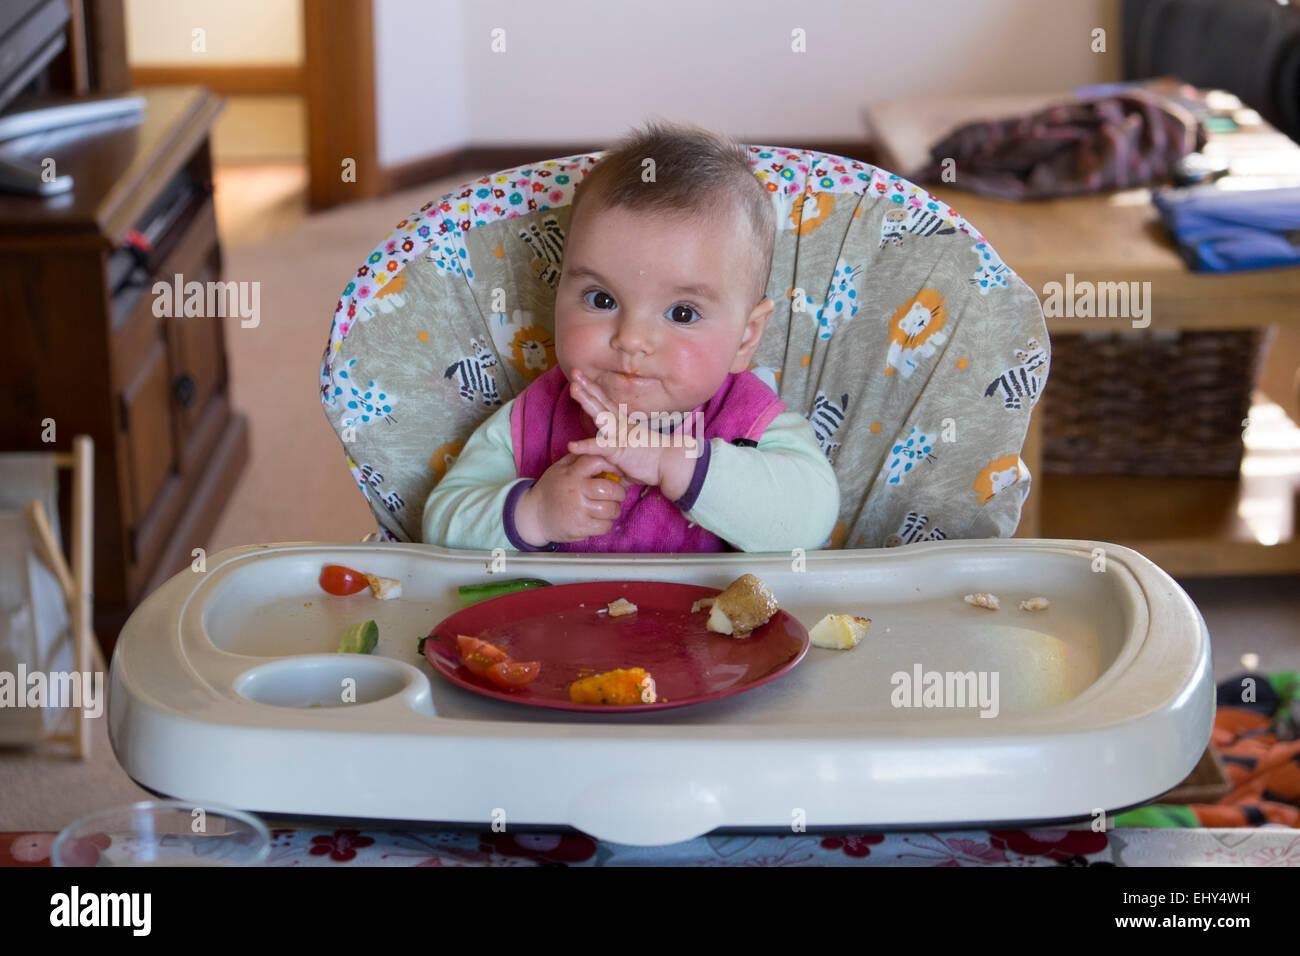 8 mois bébé fille manger des aliments dans une chaise haute Banque D'Images